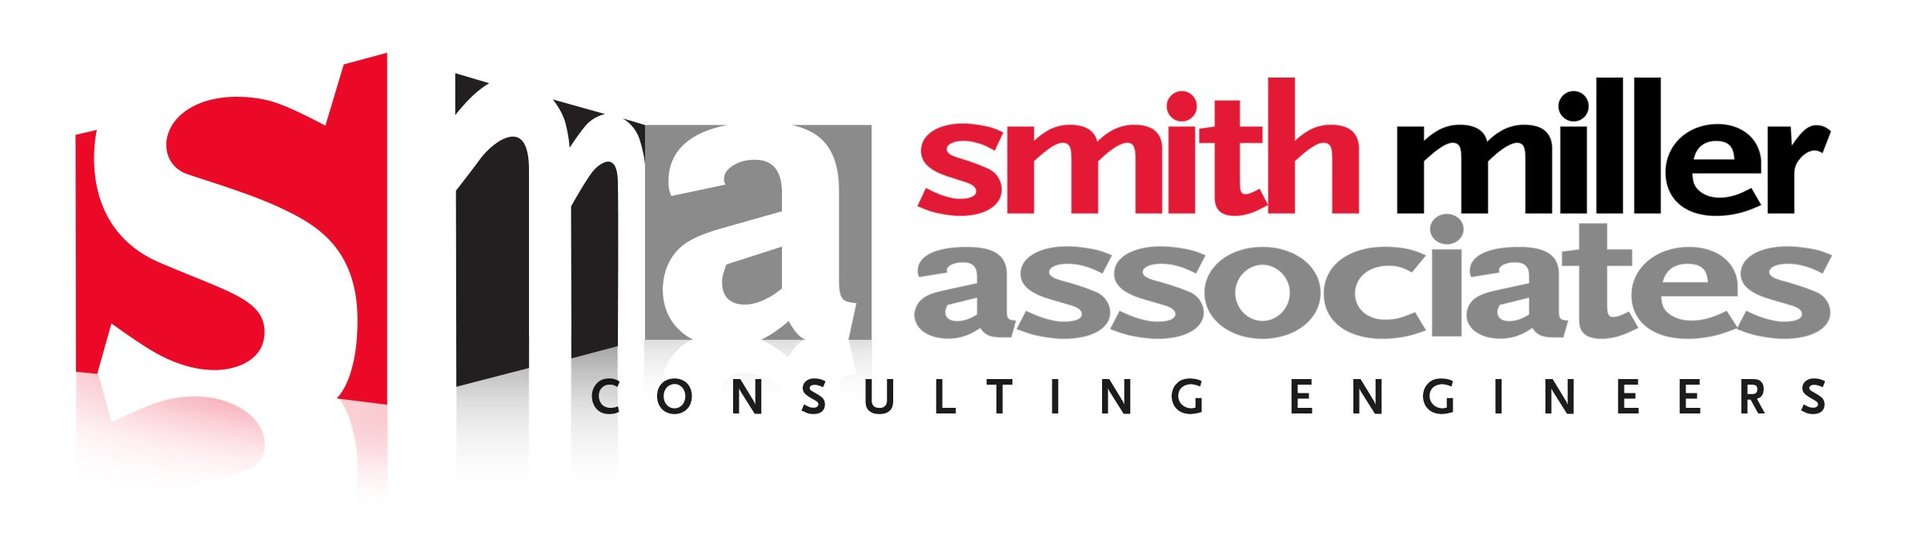 Smith Miller Associates logo